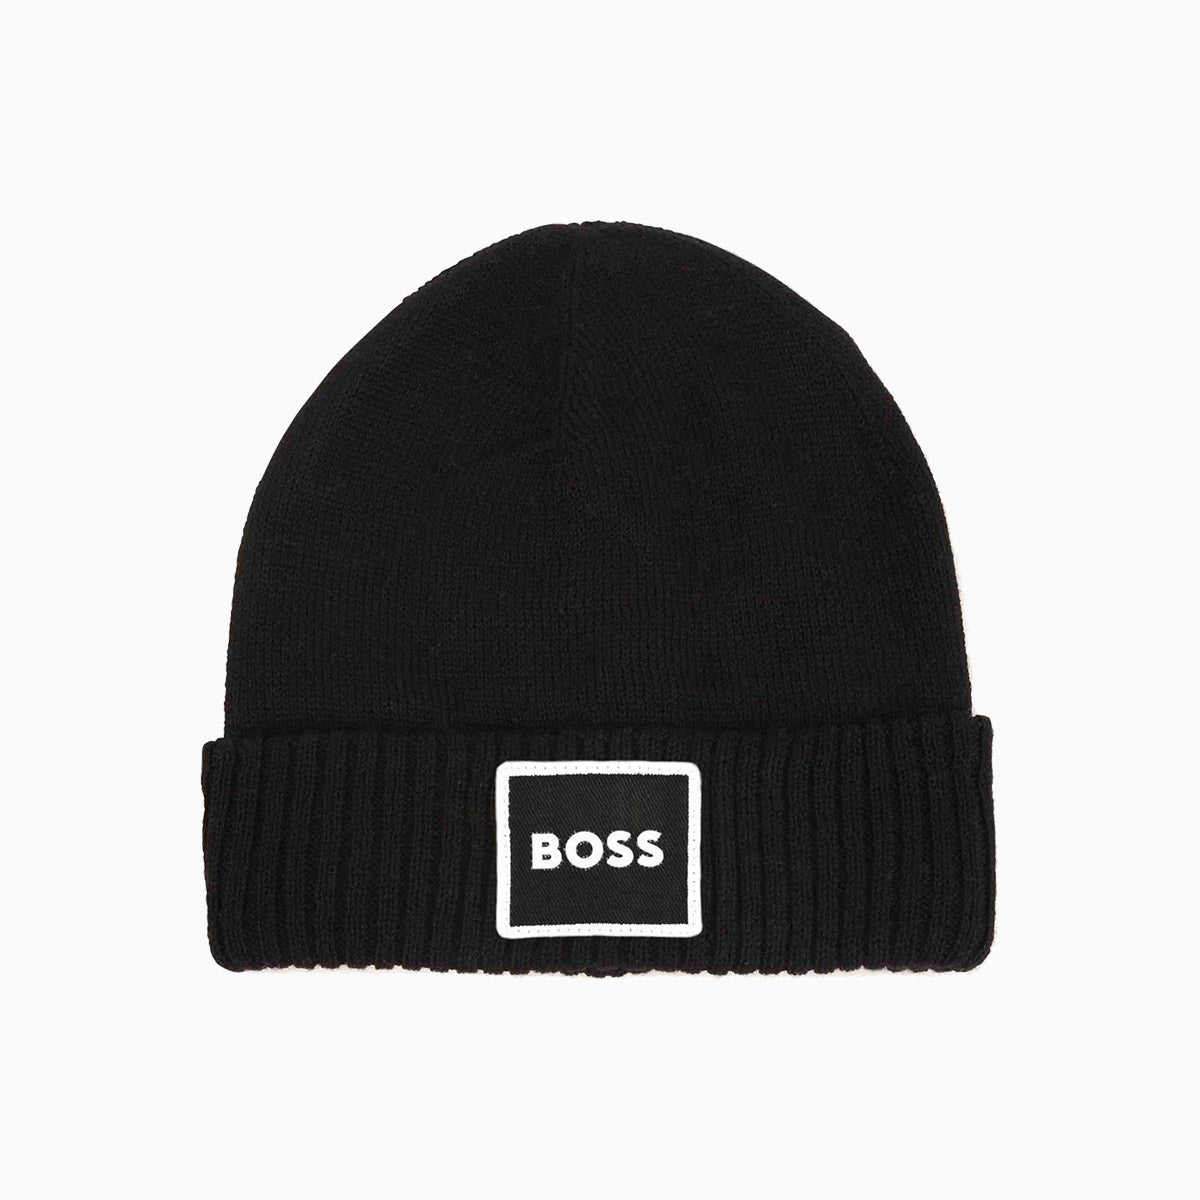 hugo-boss-kids-pull-on-knitted-beanie-hat-j01145-09b